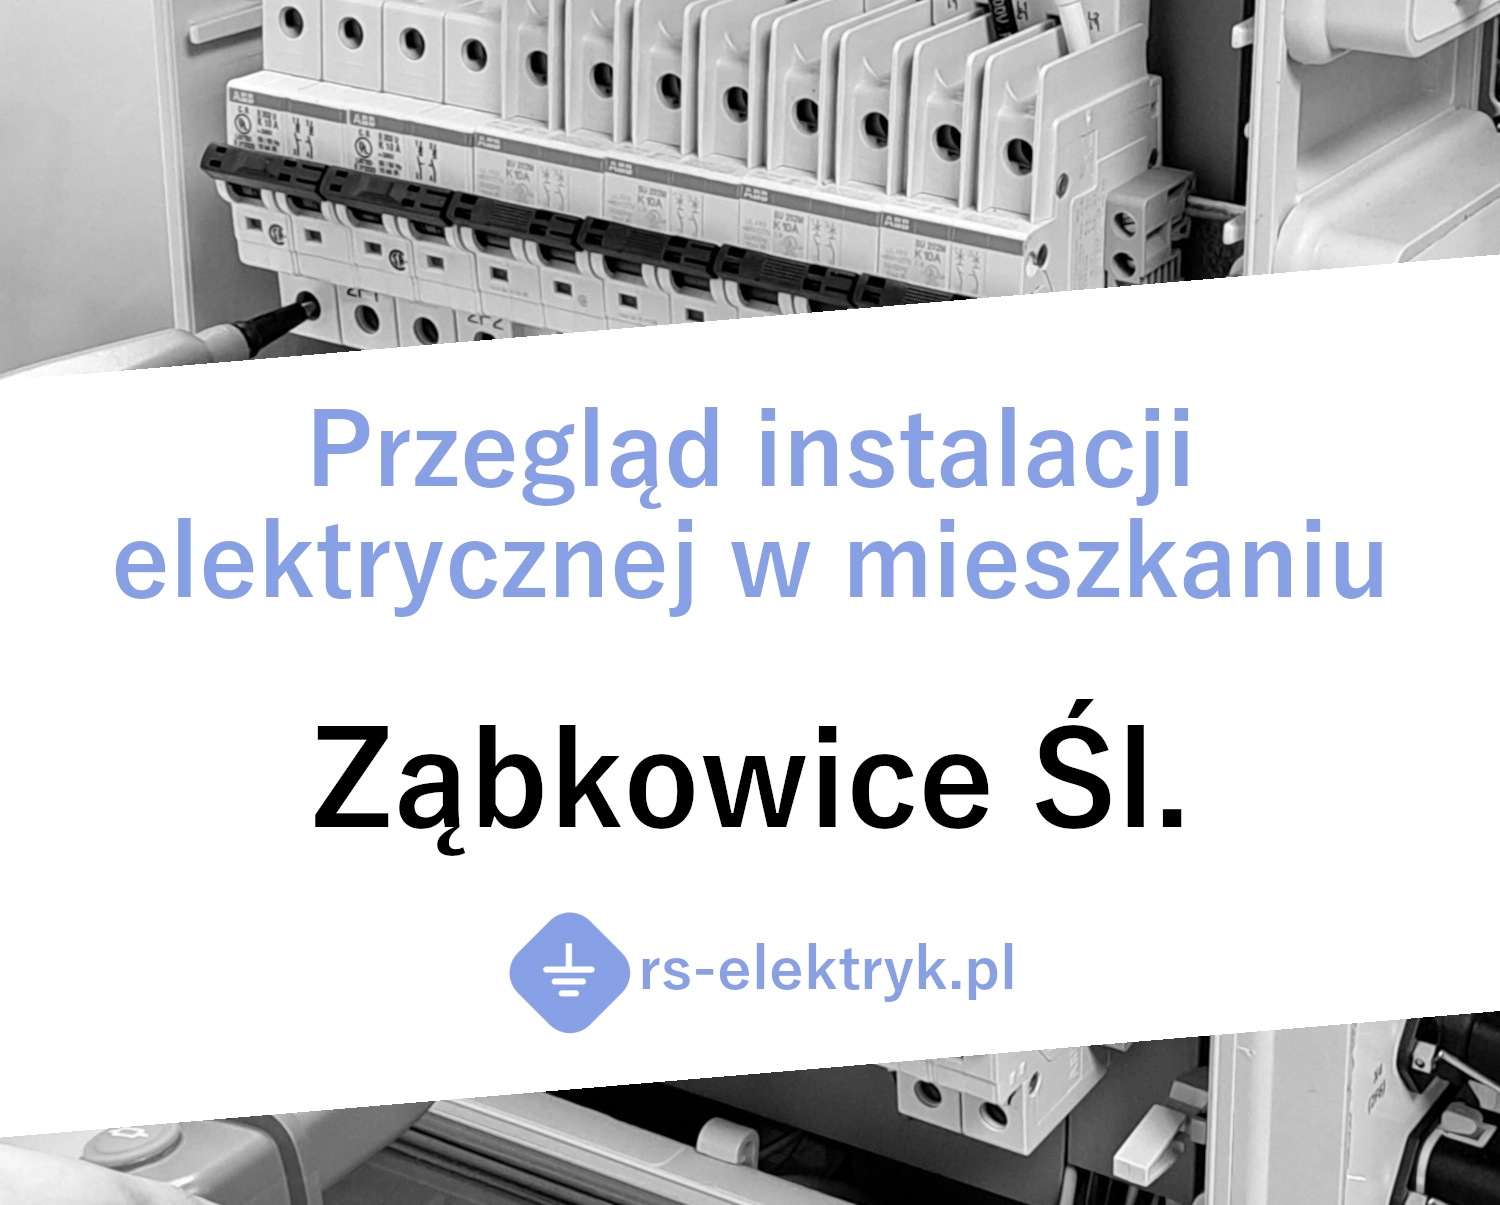 Przegląd instalacji elektrycznej w mieszkaniu Ząbkowice Śląskie